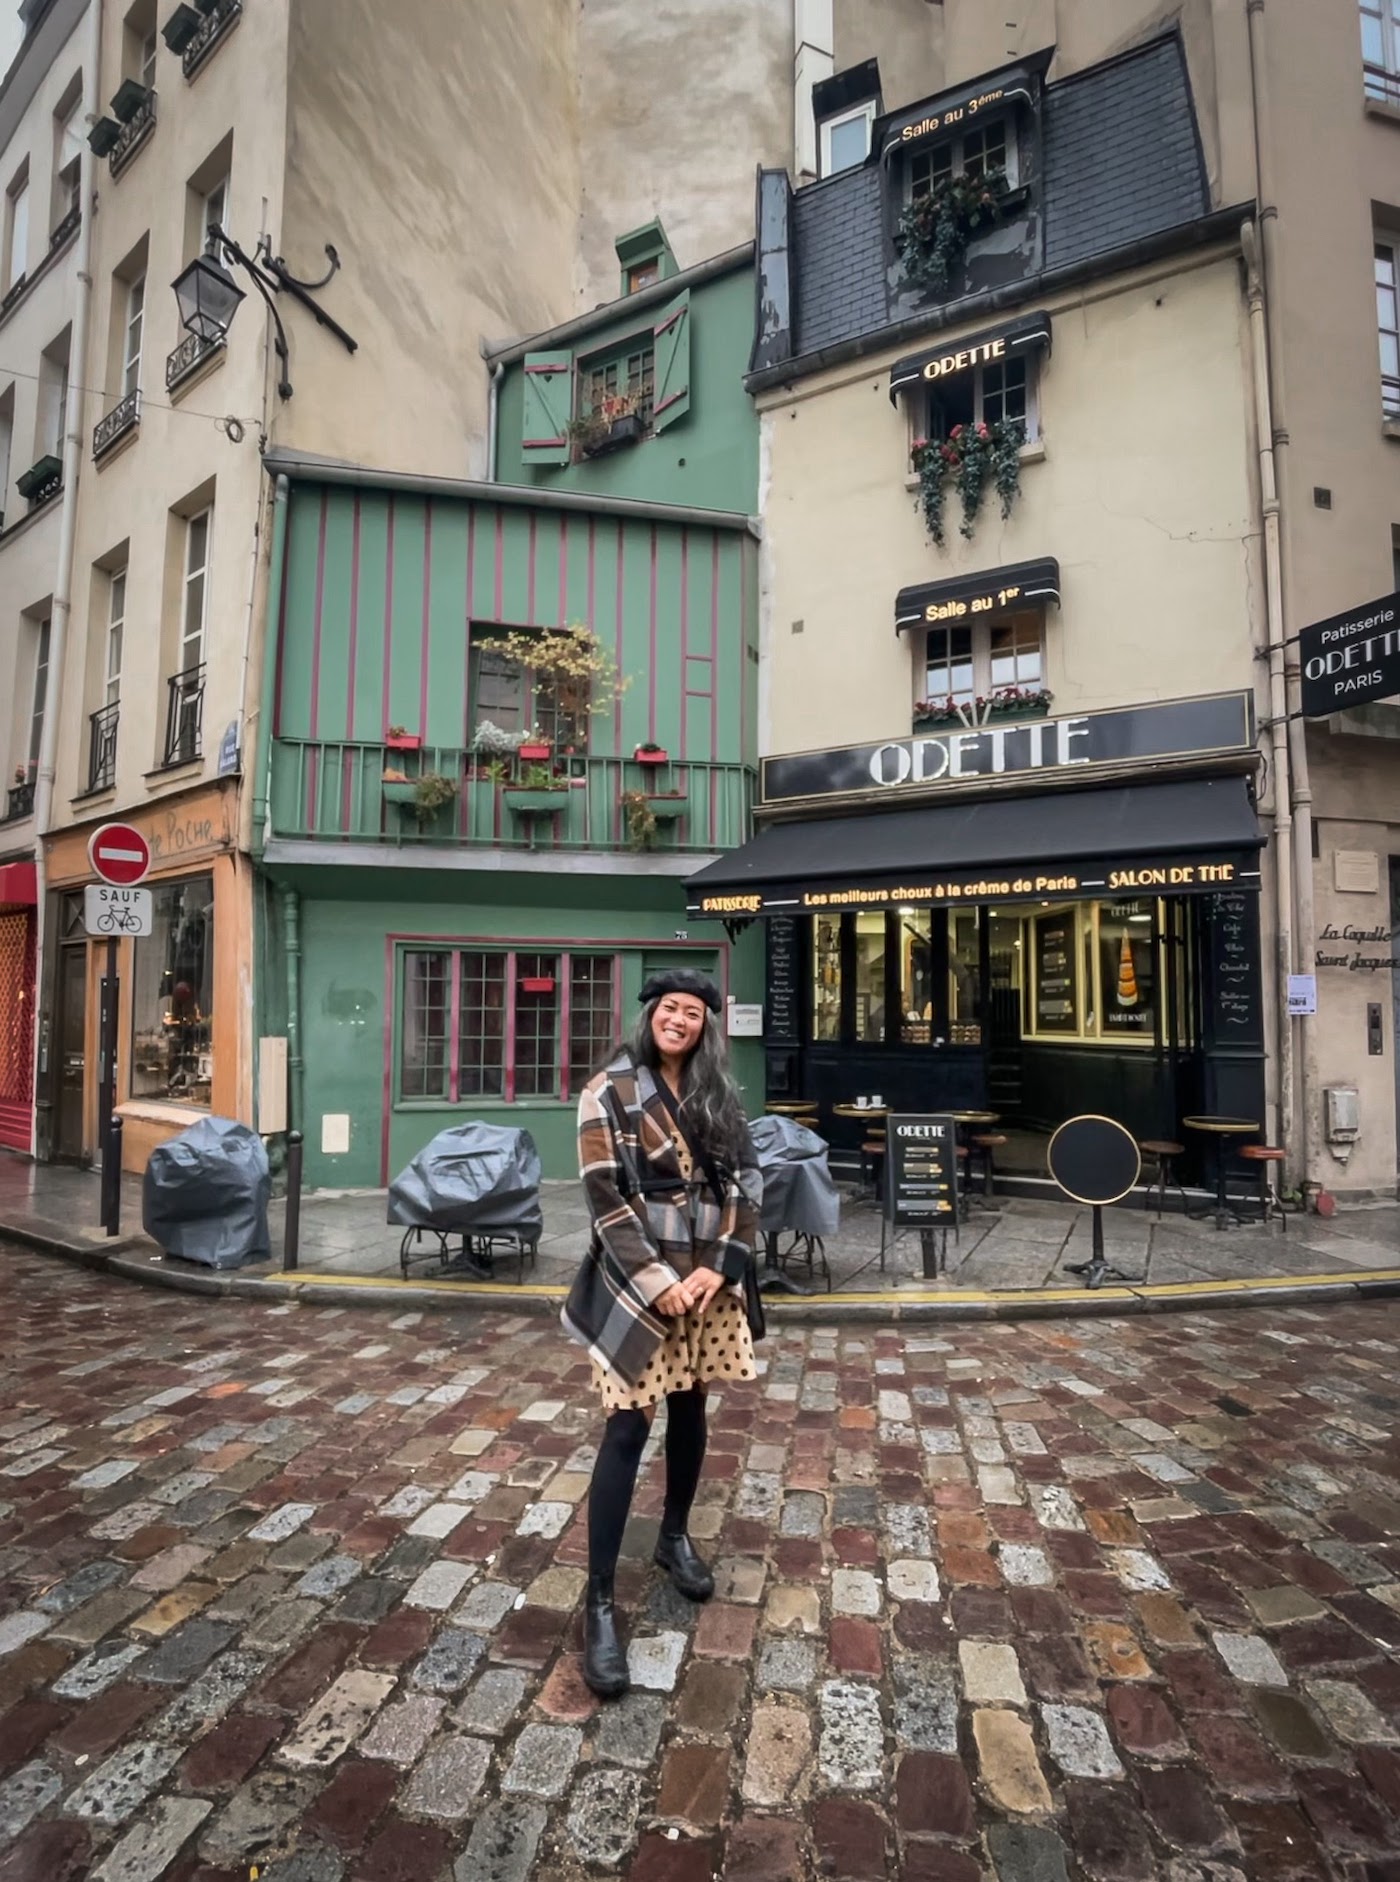 Odette Cafe Paris France Travel Guide